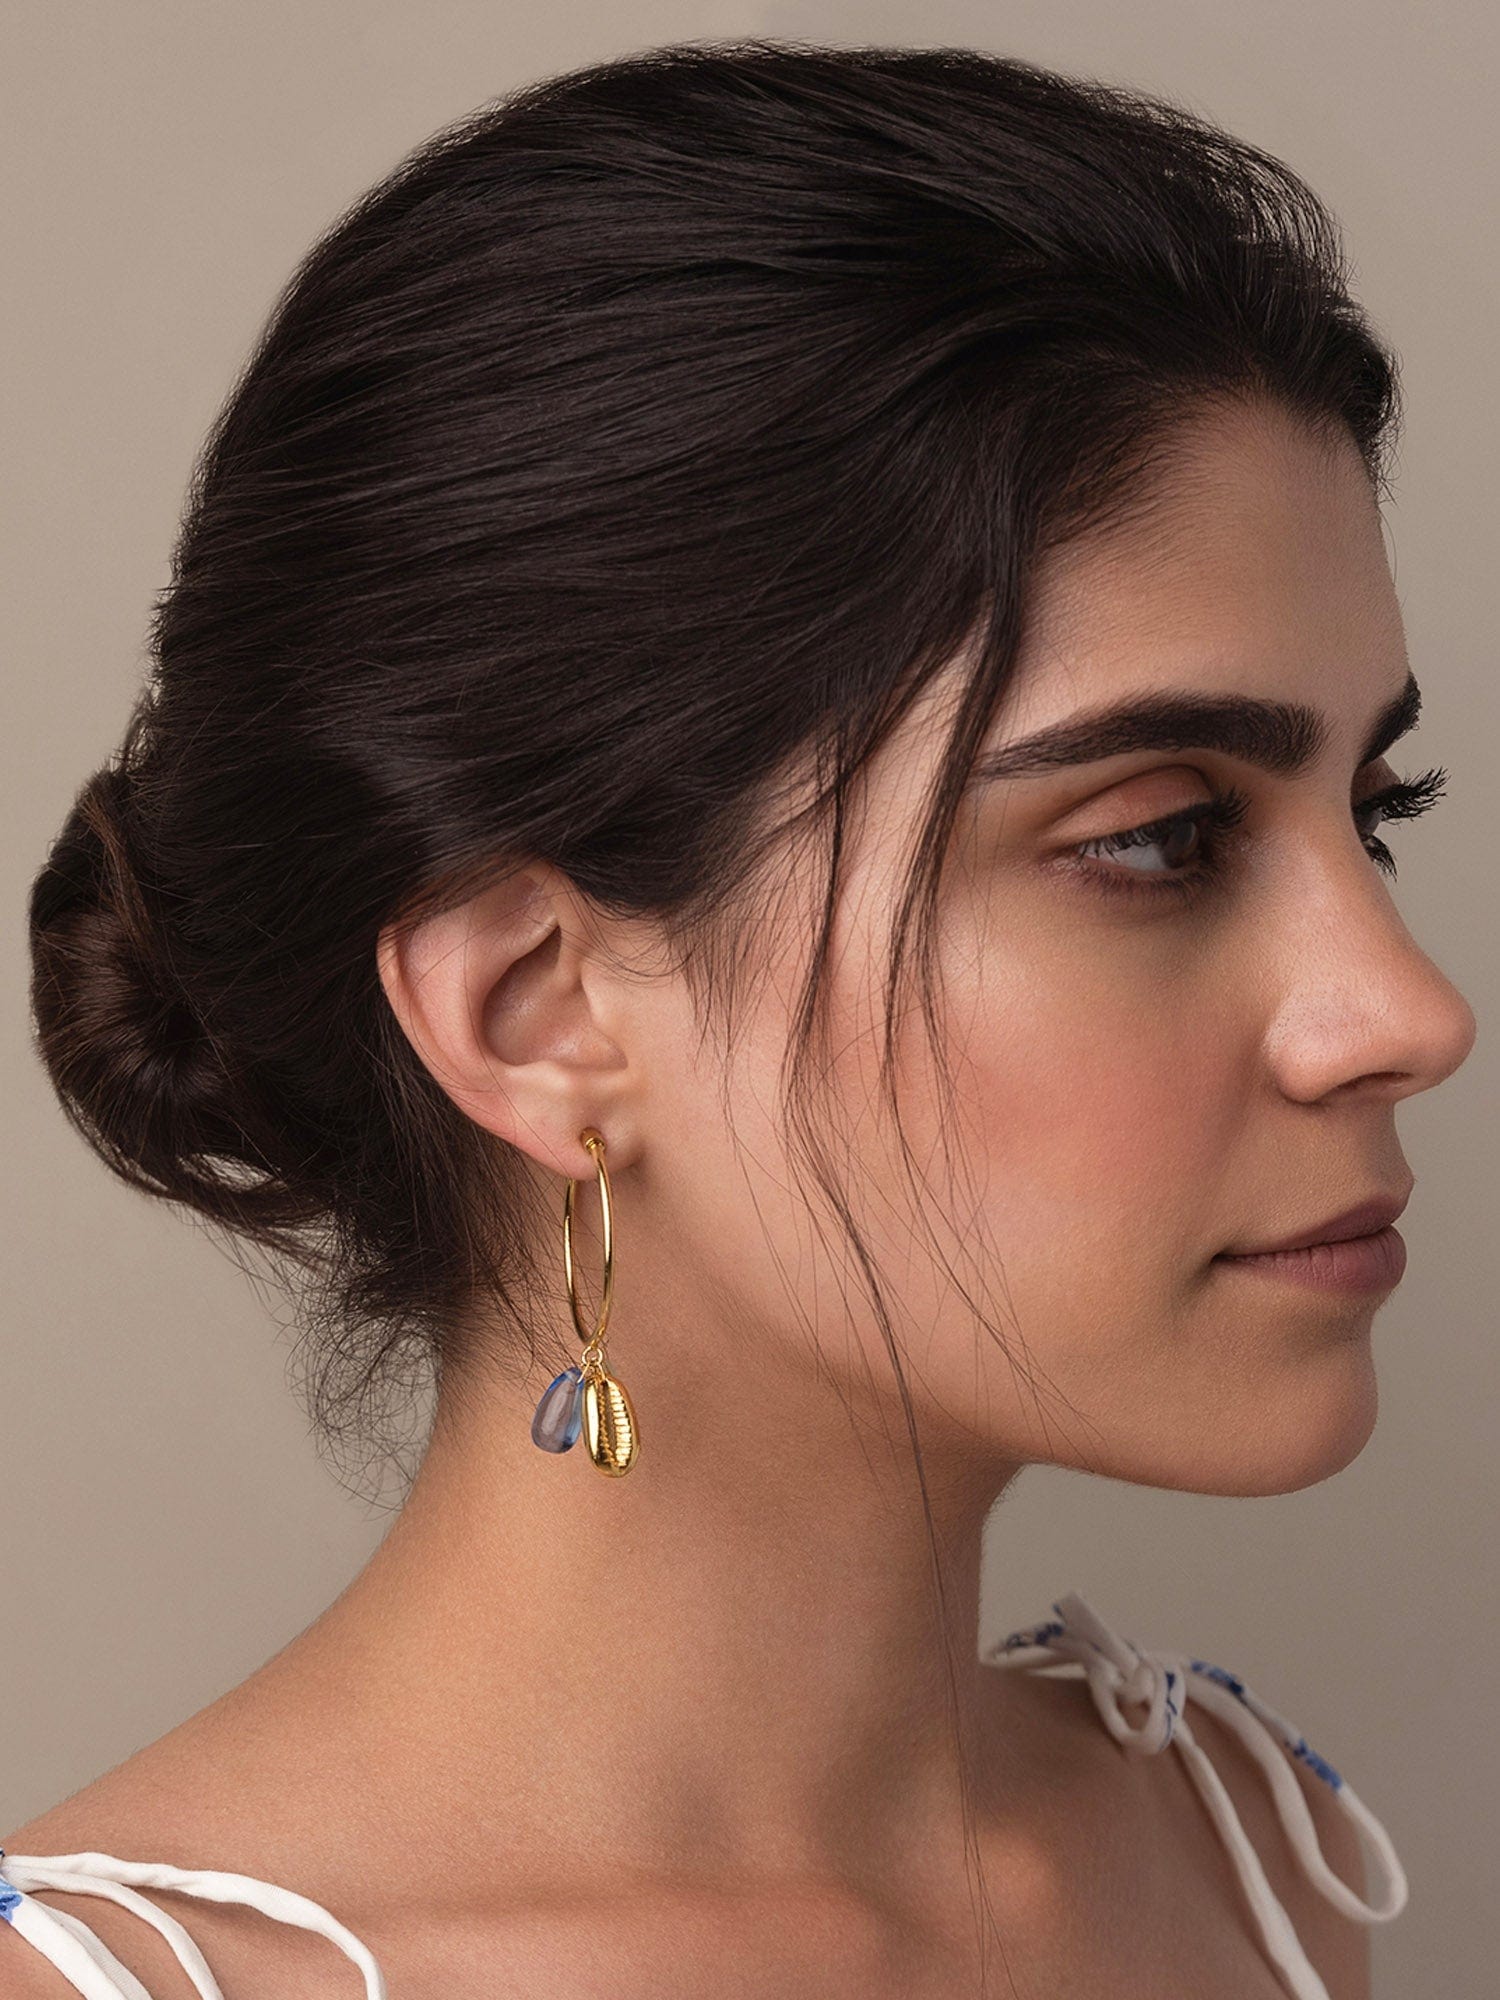 Iliana earrings